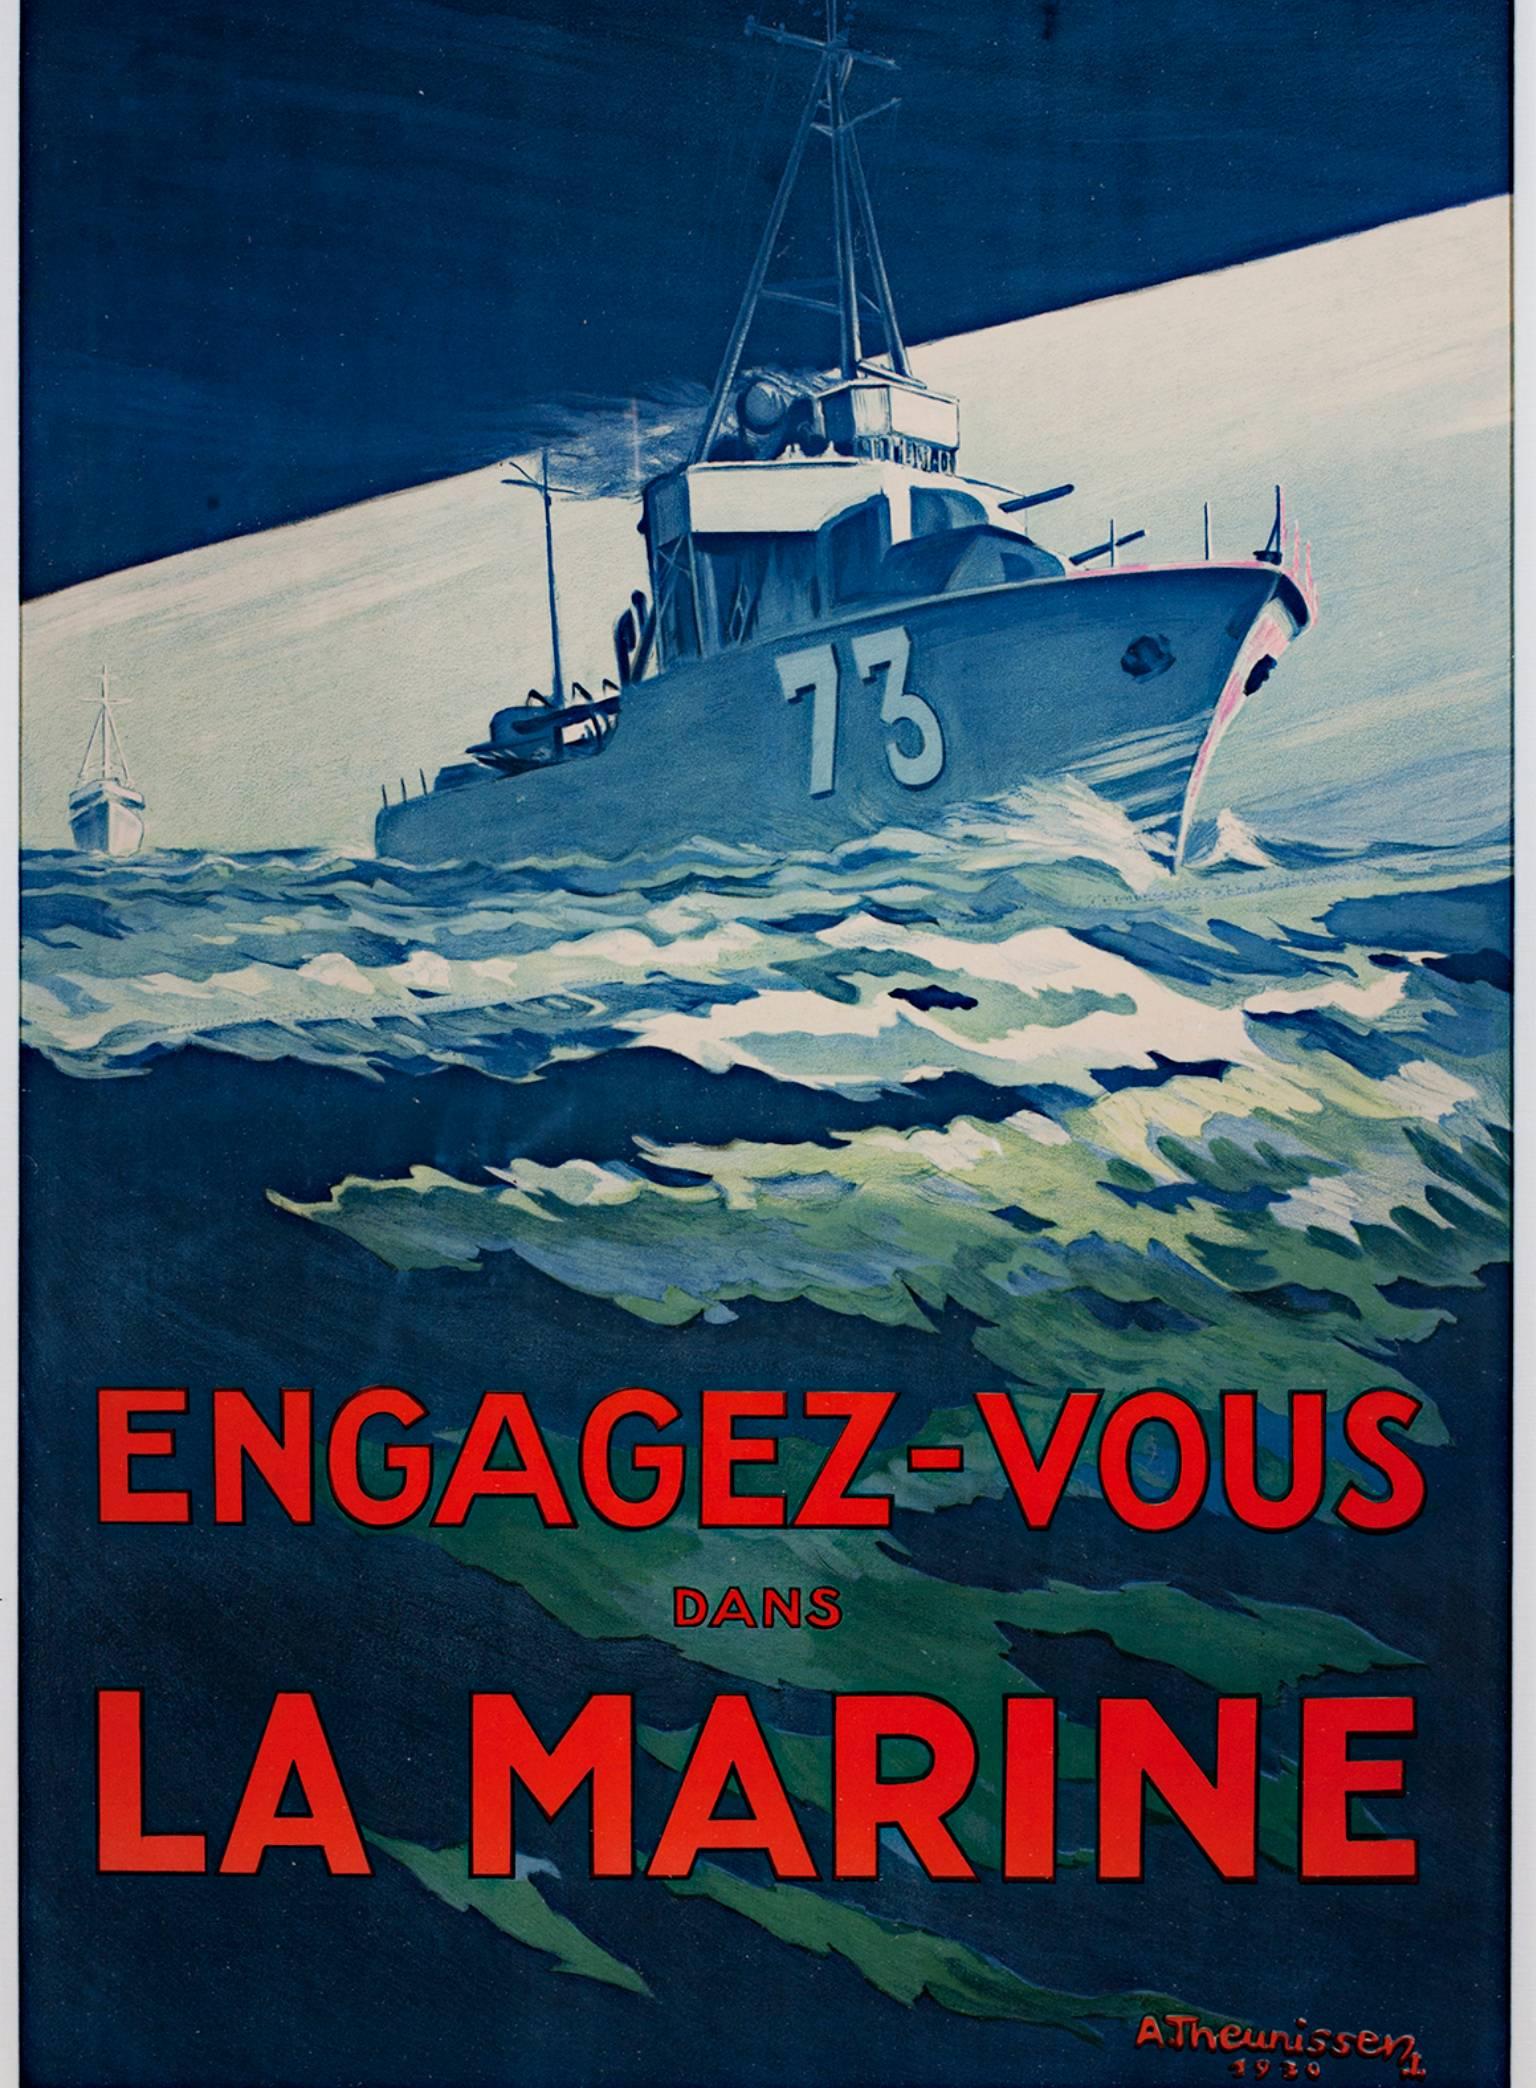 "Engagez-Vous Dans La Marine (Battleship)" ist ein originales Farblithografie-Poster, das unten rechts vom Künstler A. Theunissen signiert und datiert ist. Es zeigt ein Schlachtschiff auf dem Ozean mit einem Aufruf zum Einsatz für die französische